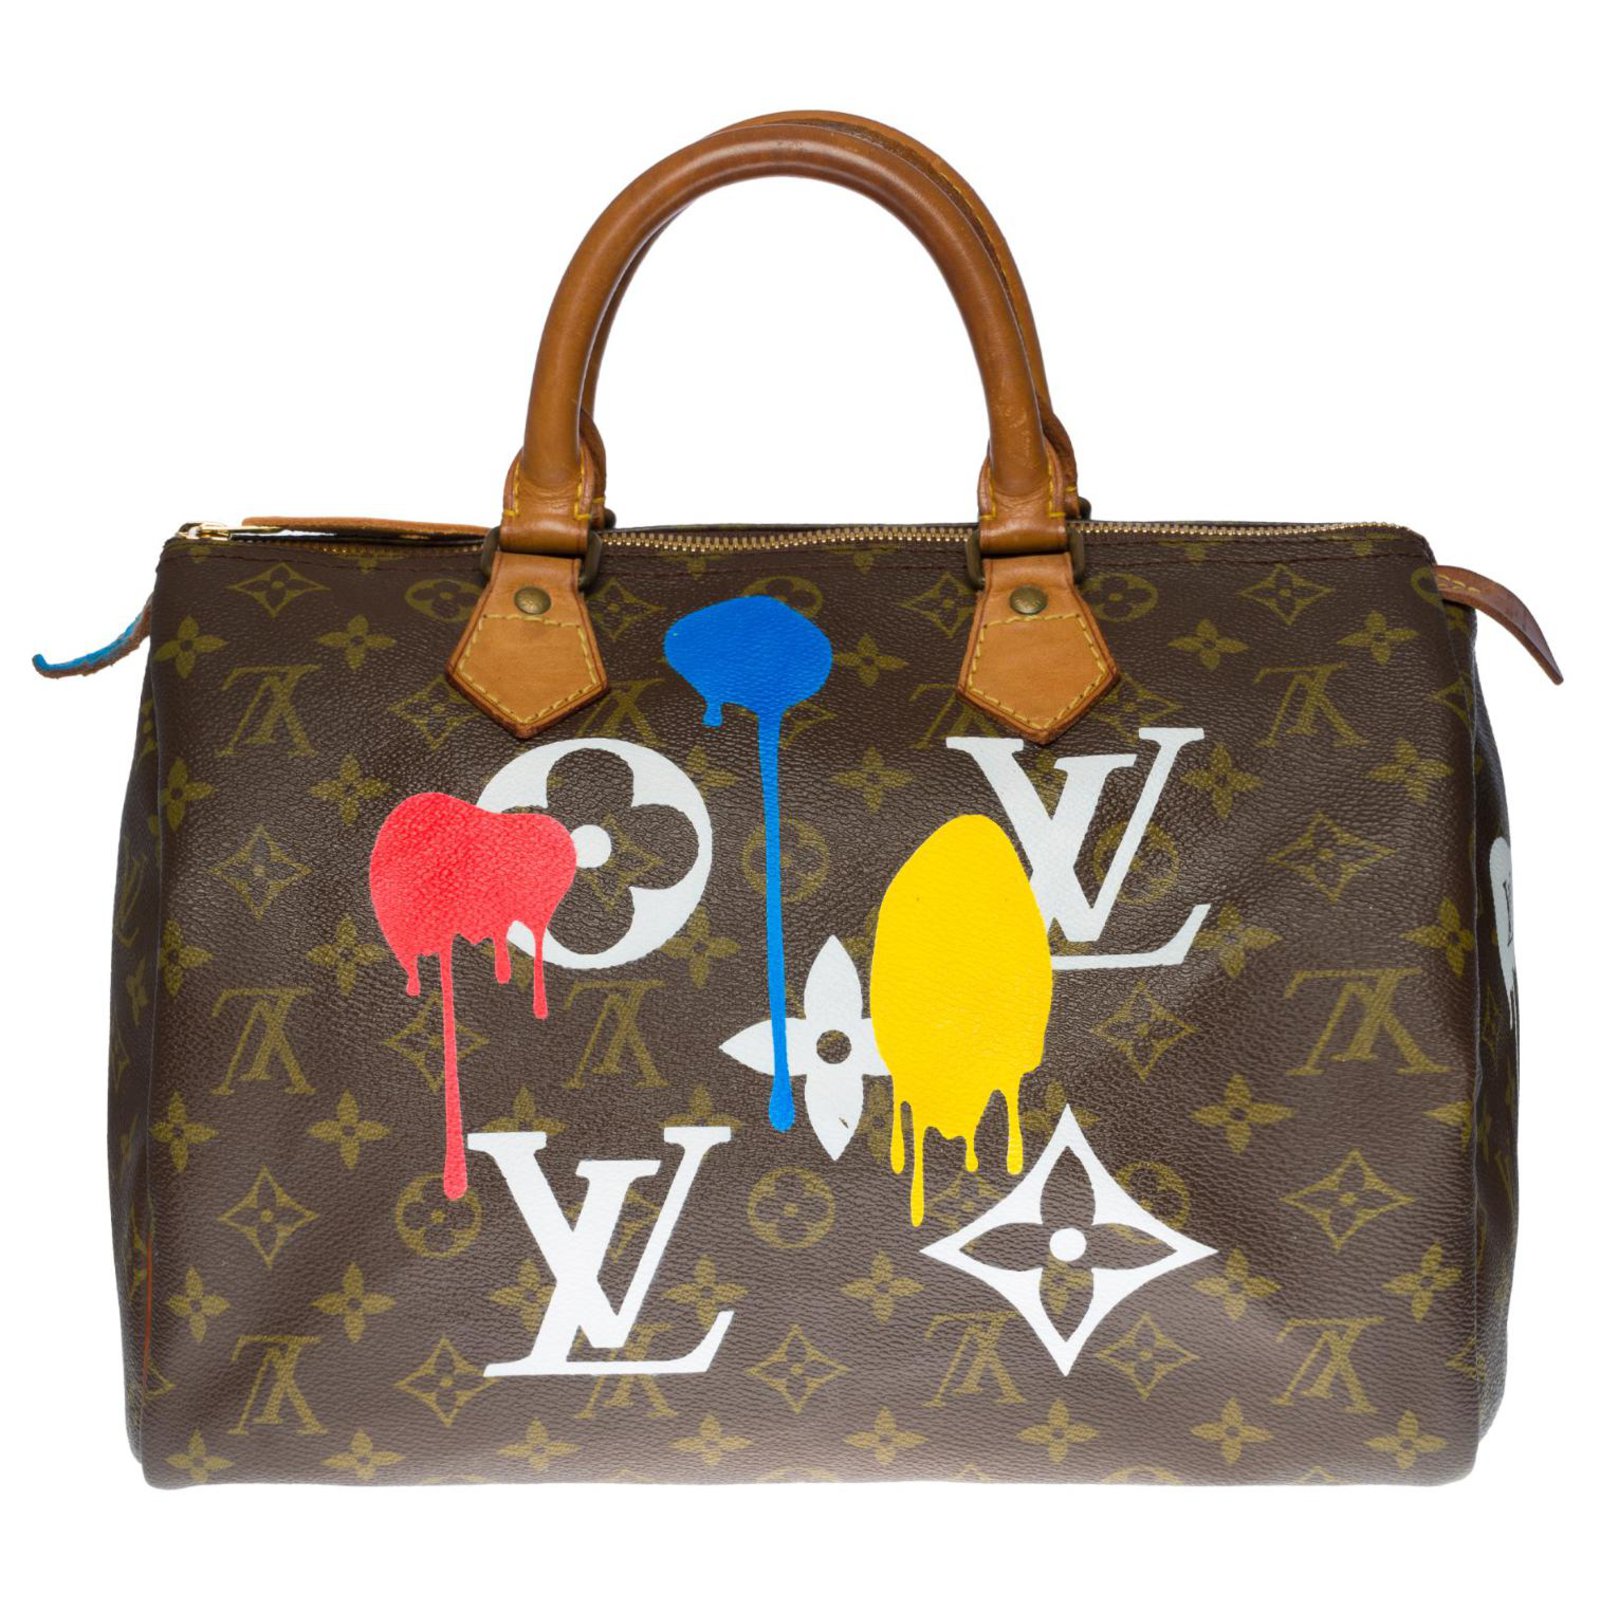 How to make your Chanel Louis Vuitton handbag even more you